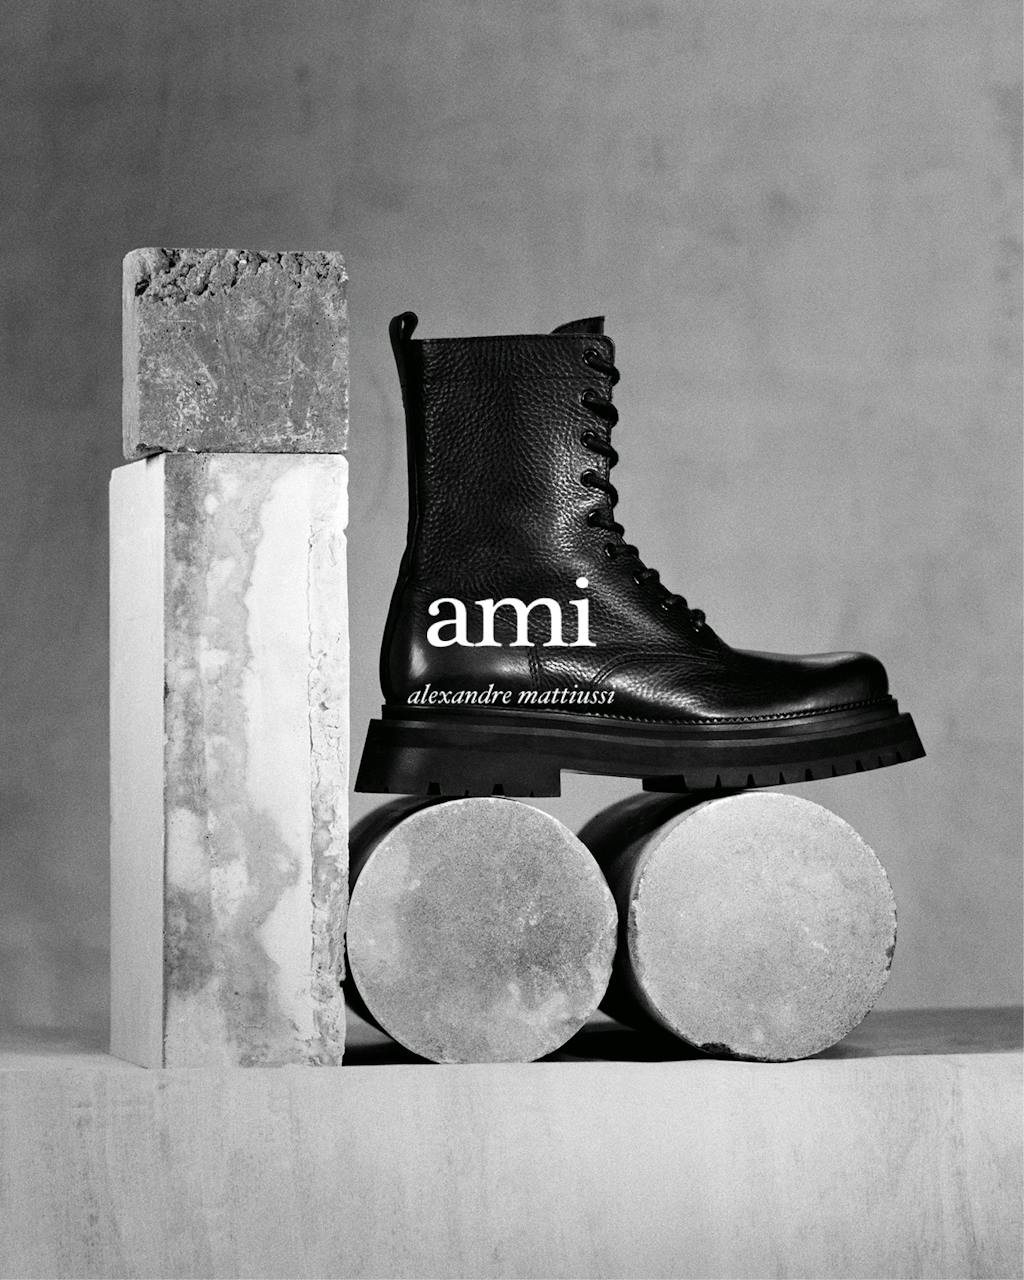 Ami Campaign - © Lambert | Lambert